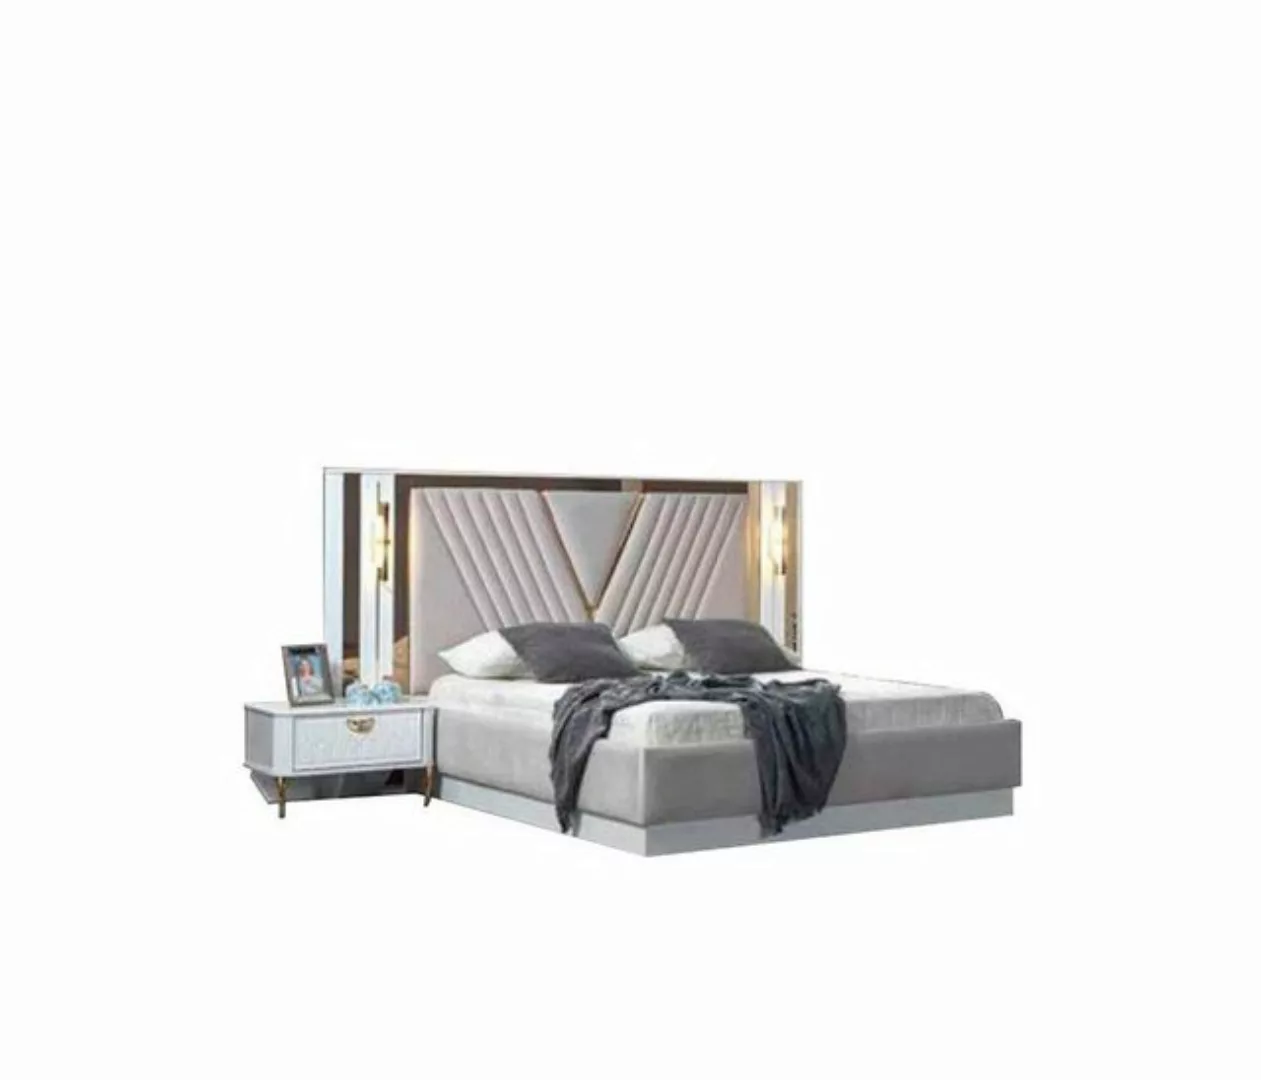 JVmoebel Bett Bett Doppelbett Betten Möbel Einrichtung Schlafzimmer Möbel D günstig online kaufen